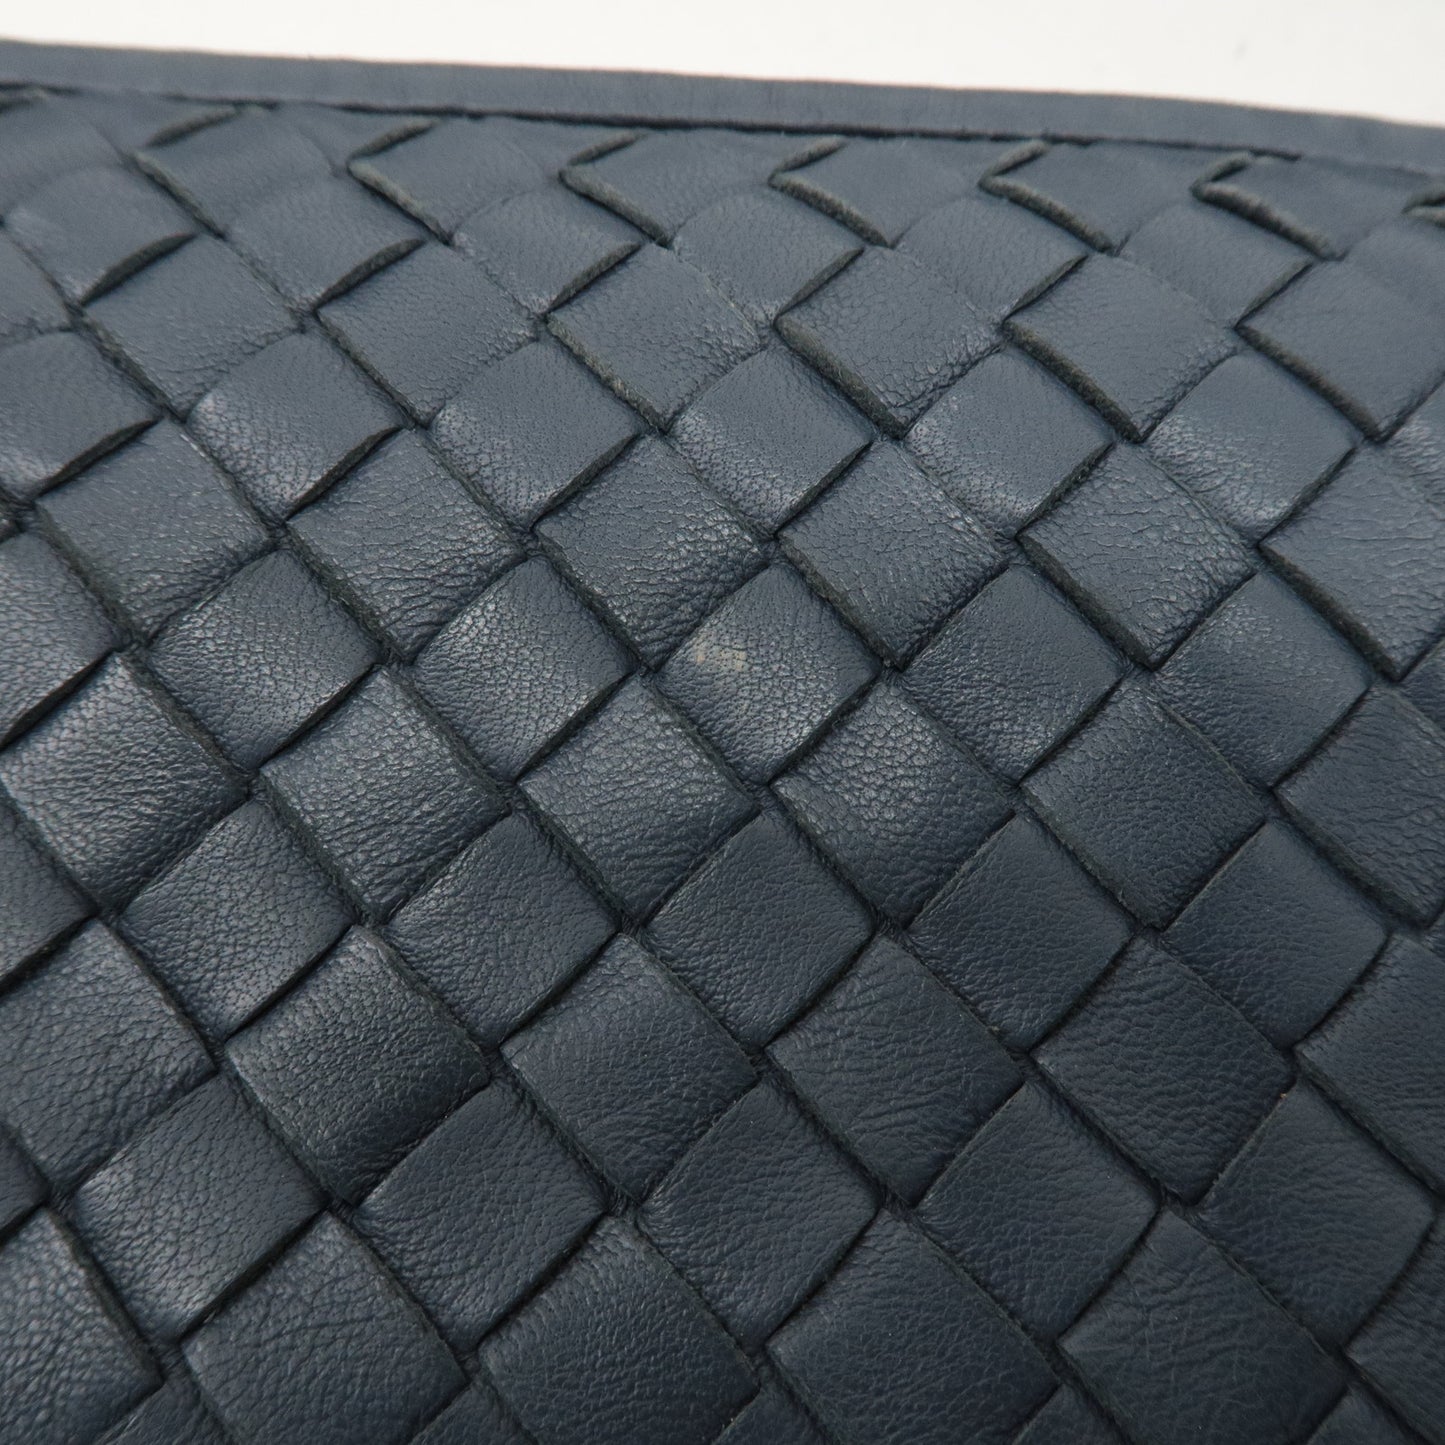 BOTTEGA VENETA Hobo Intrecciato Leather Shoulder Bag 115653